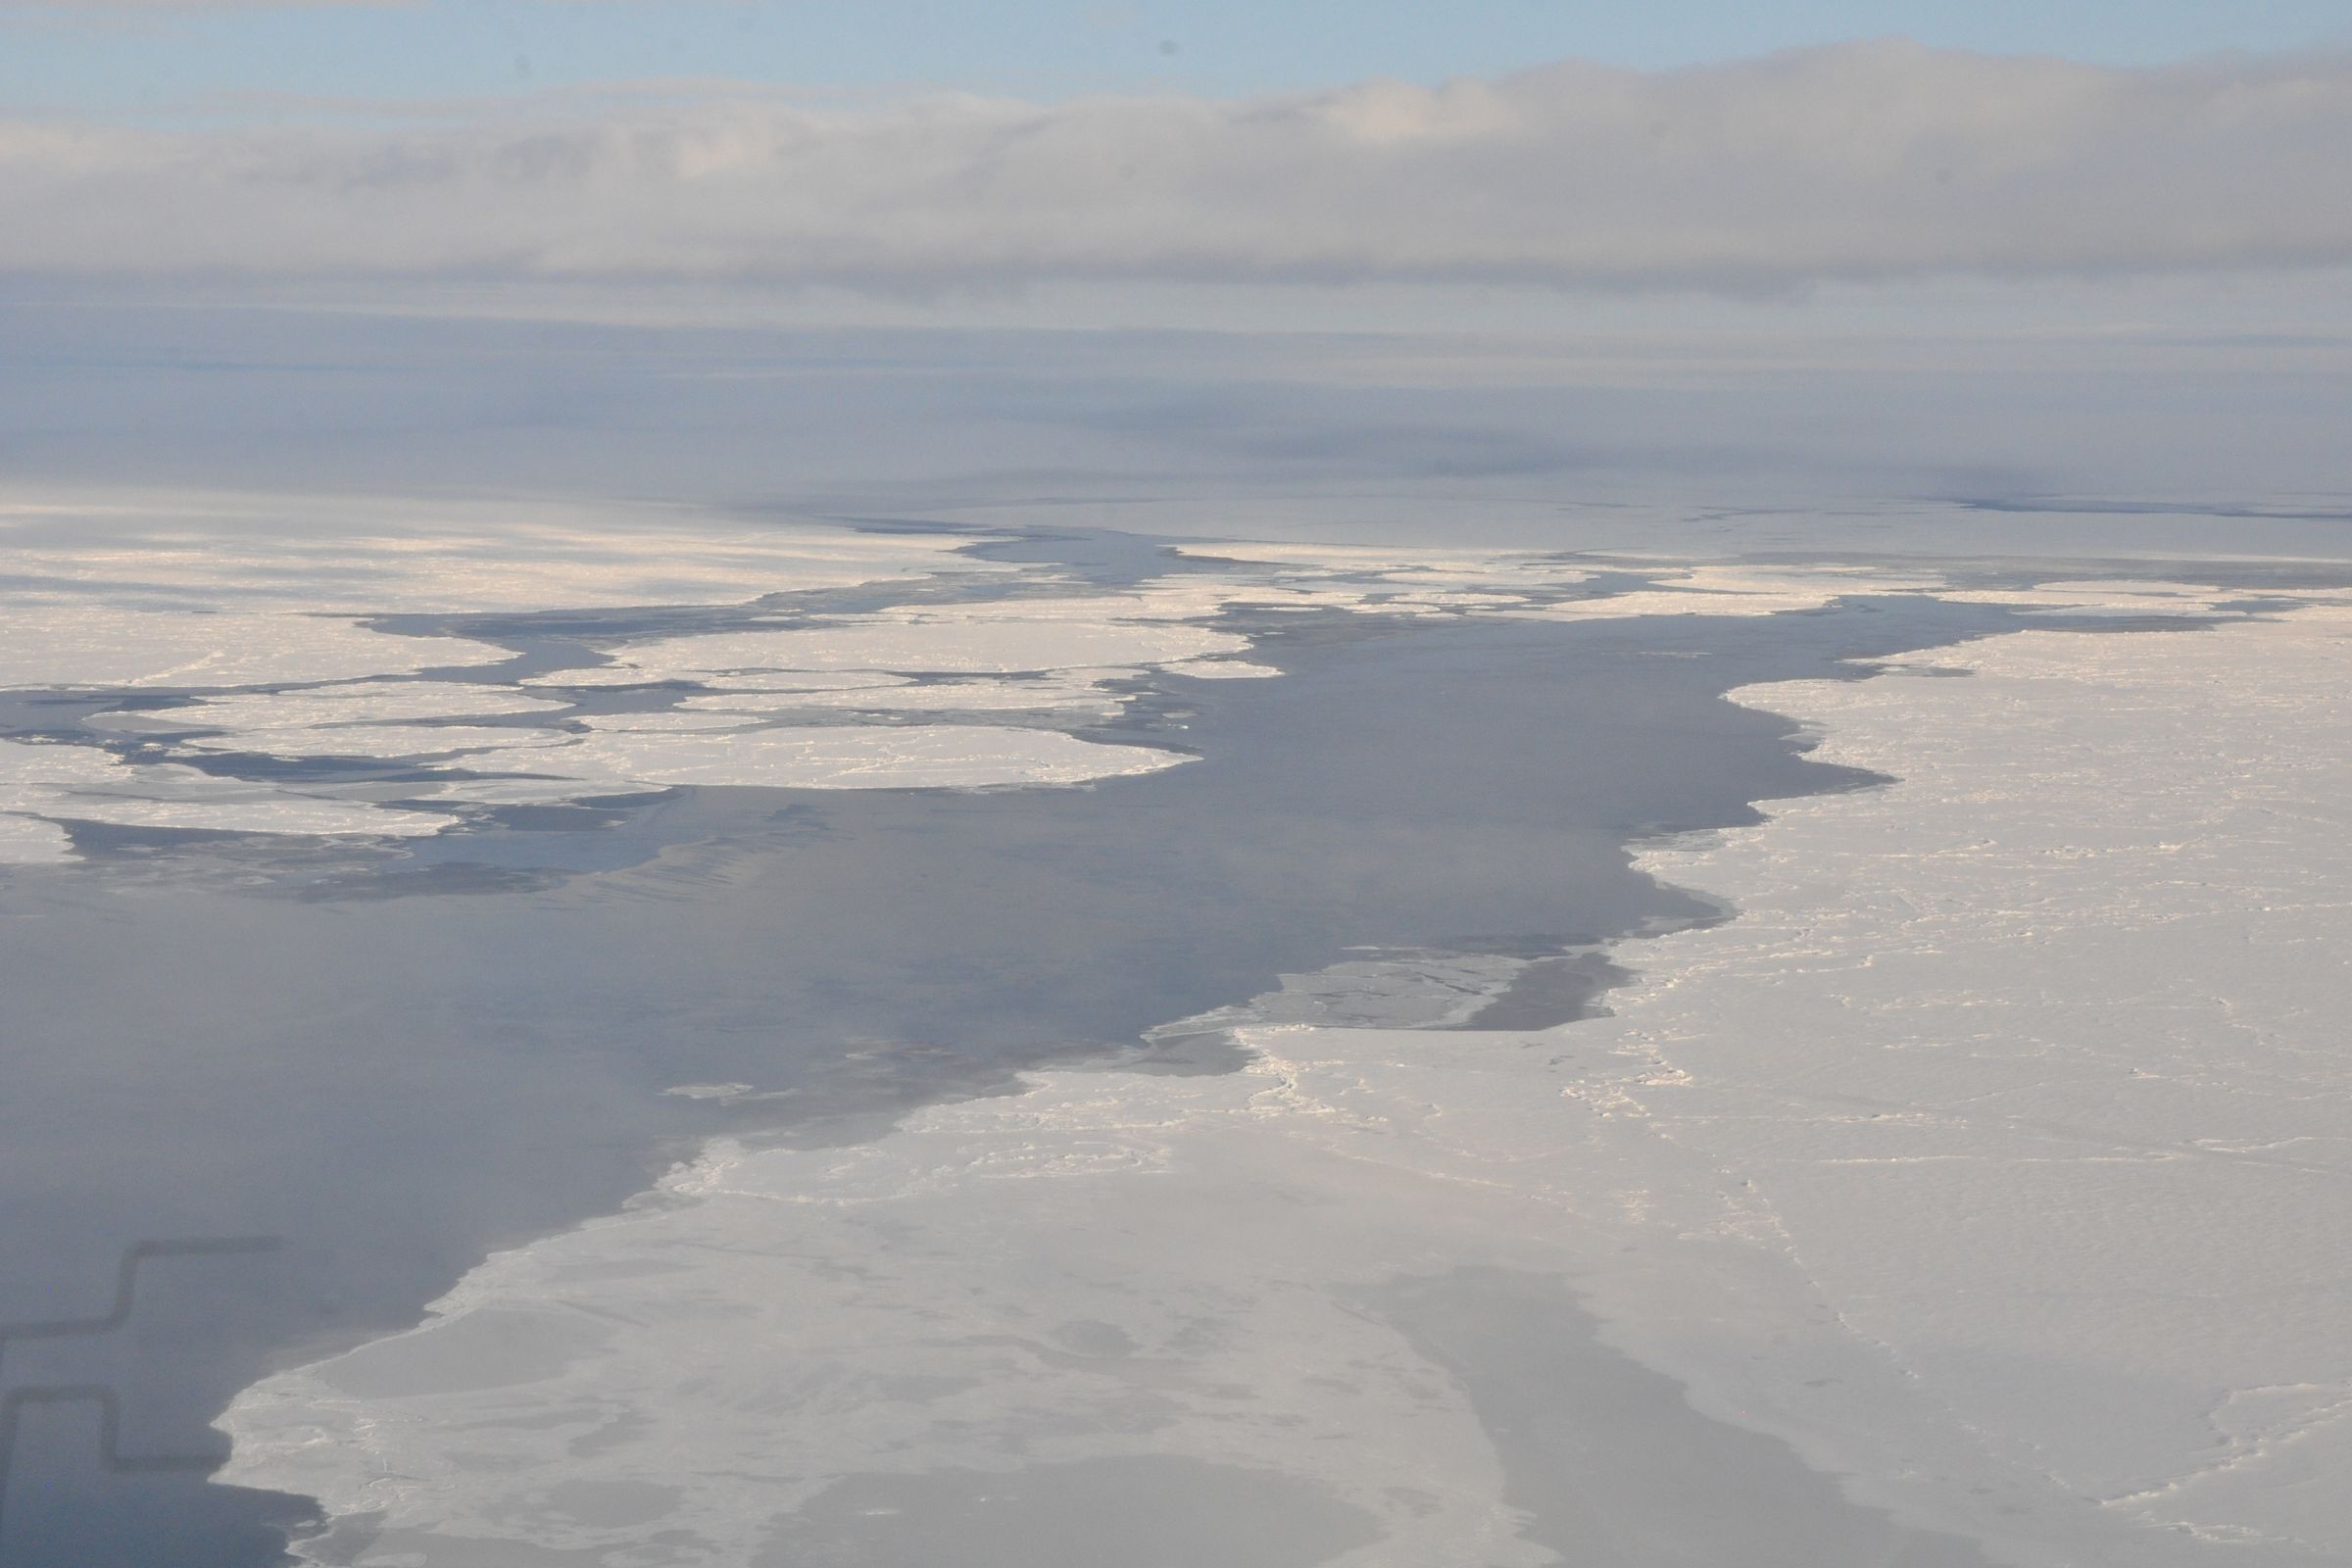 Arctic sea ice in Beaufort/Chuckchi Seas seen from NOAA's P3 flight in autumn 2014